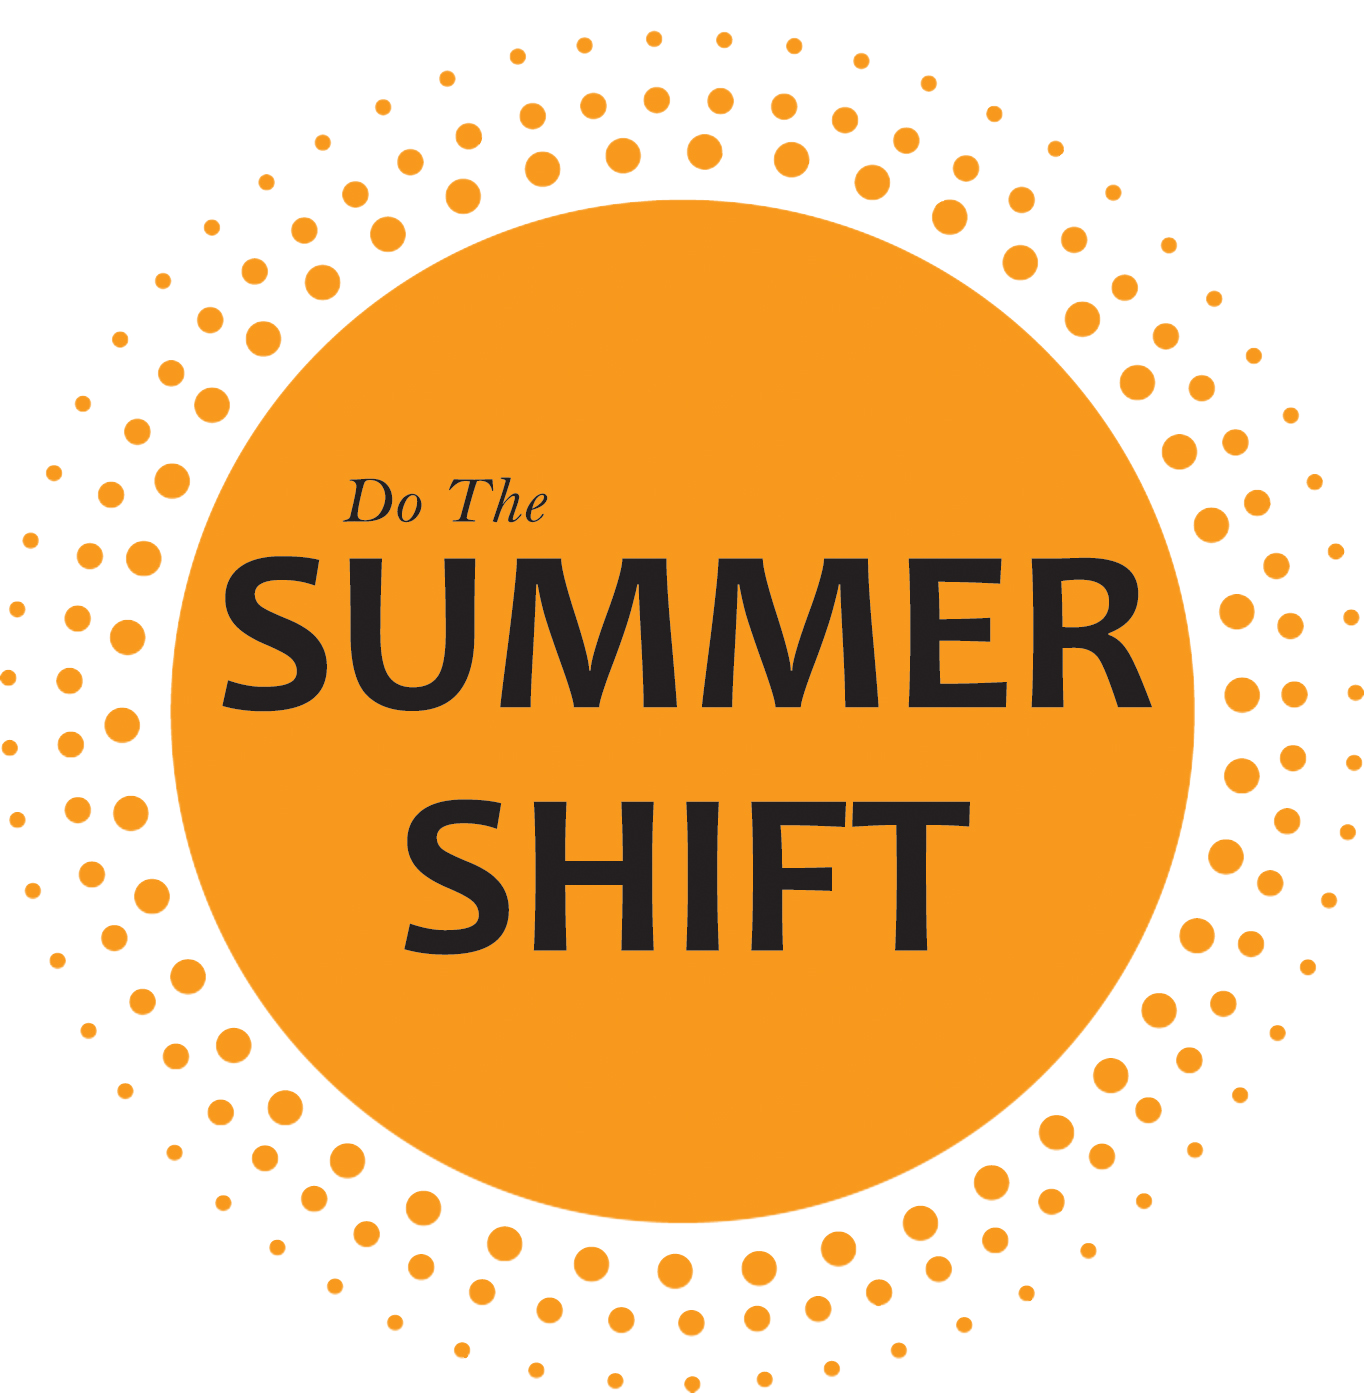 Summer Shift